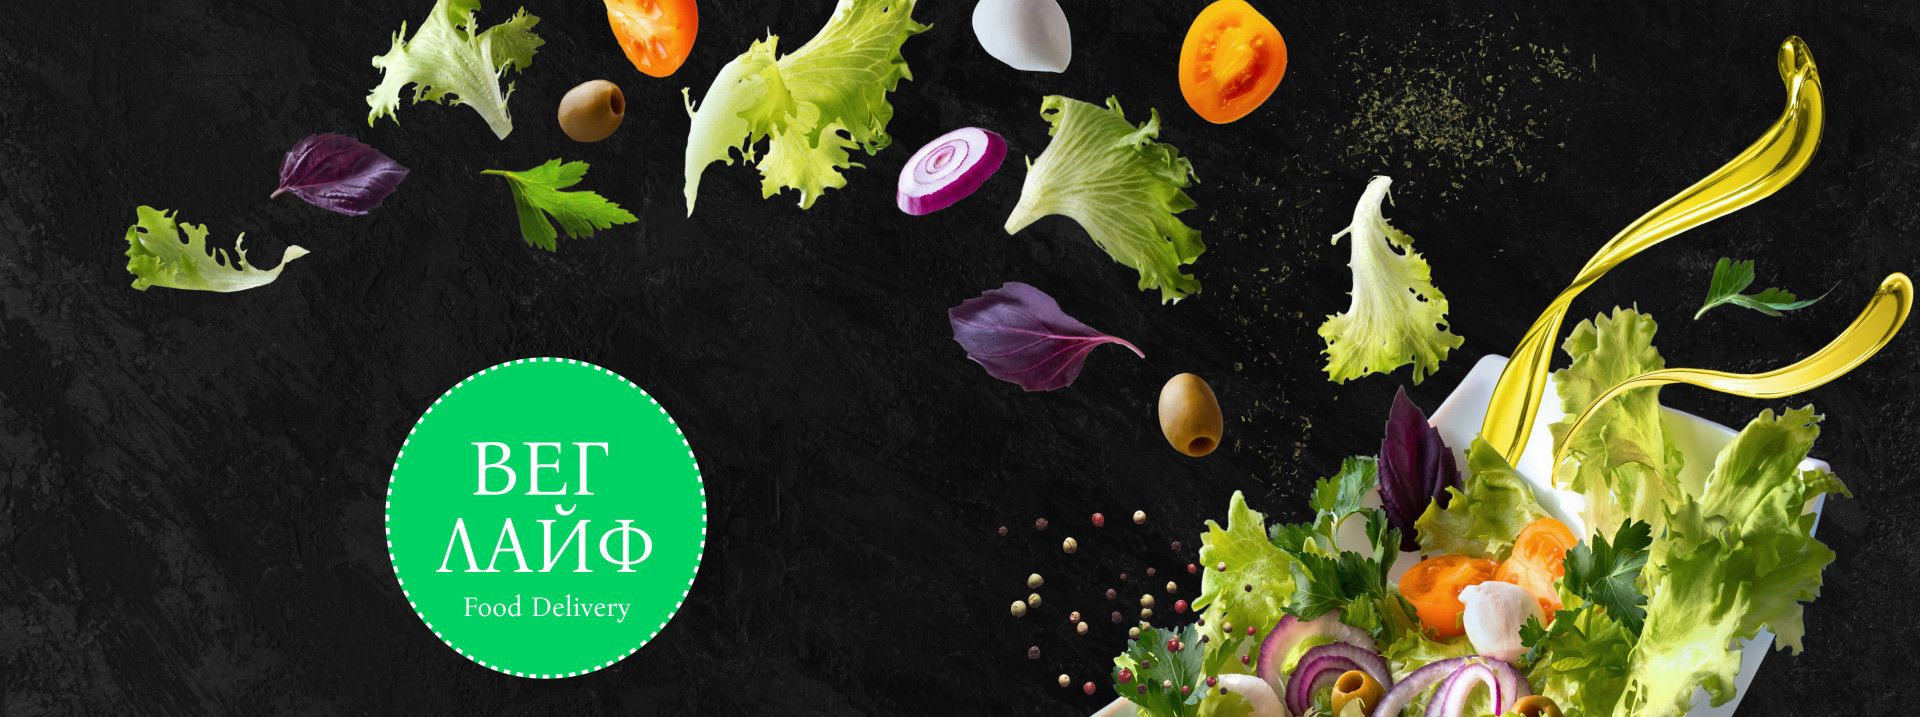 VegLife Vegetarian Food Delivery Service Promotional Website